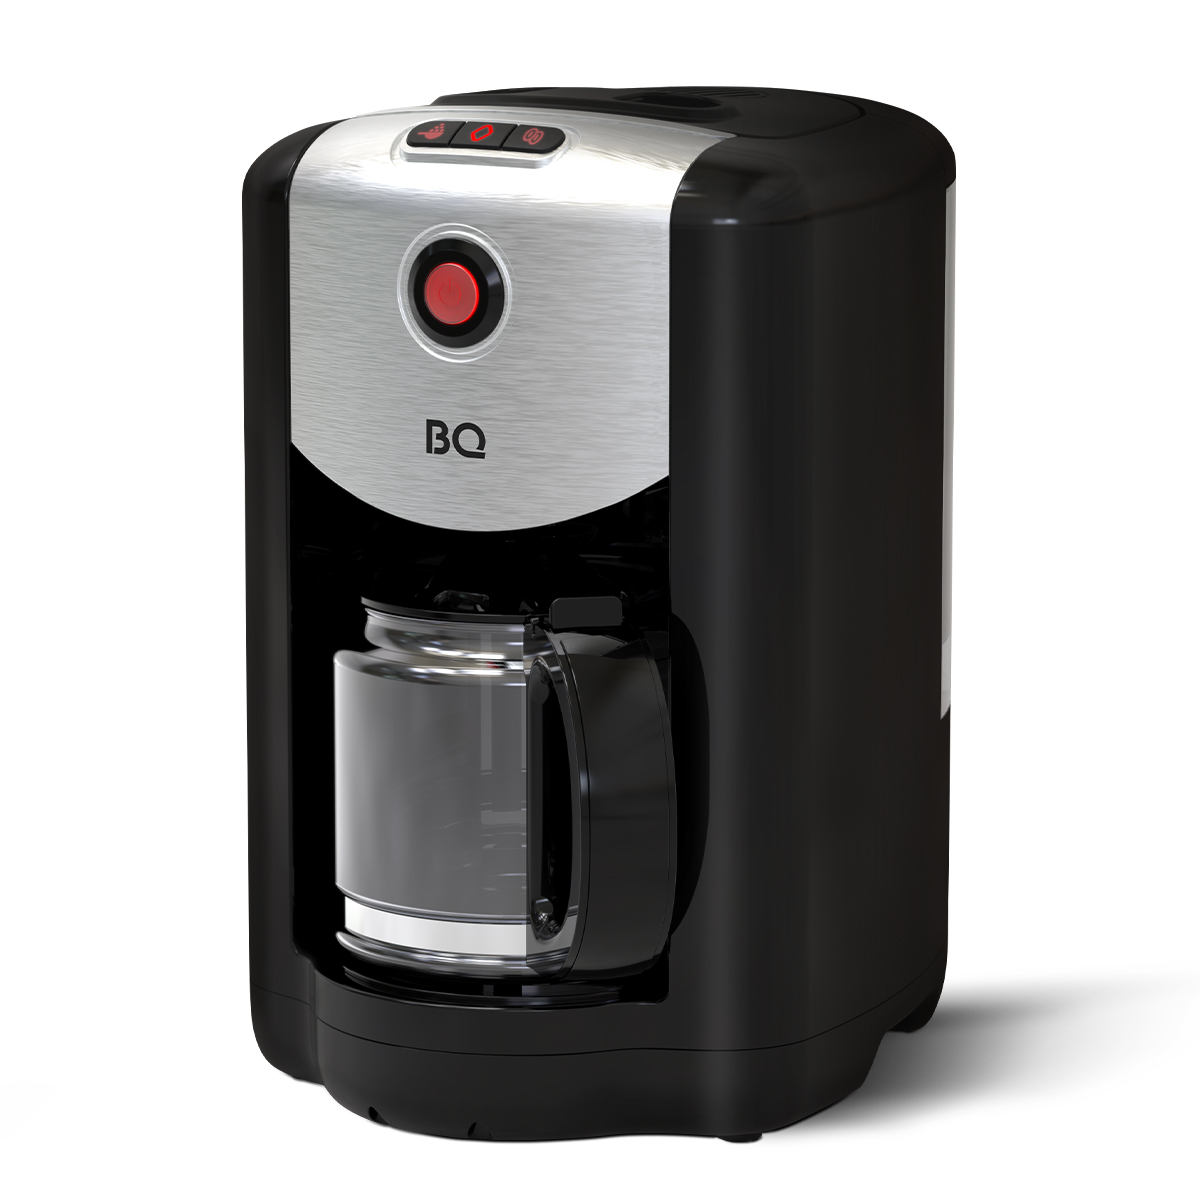 Кофеварка капельного типа BQ CM1009 серебристый, черный капельная кофеварка domfy dsm cm301 серебристый